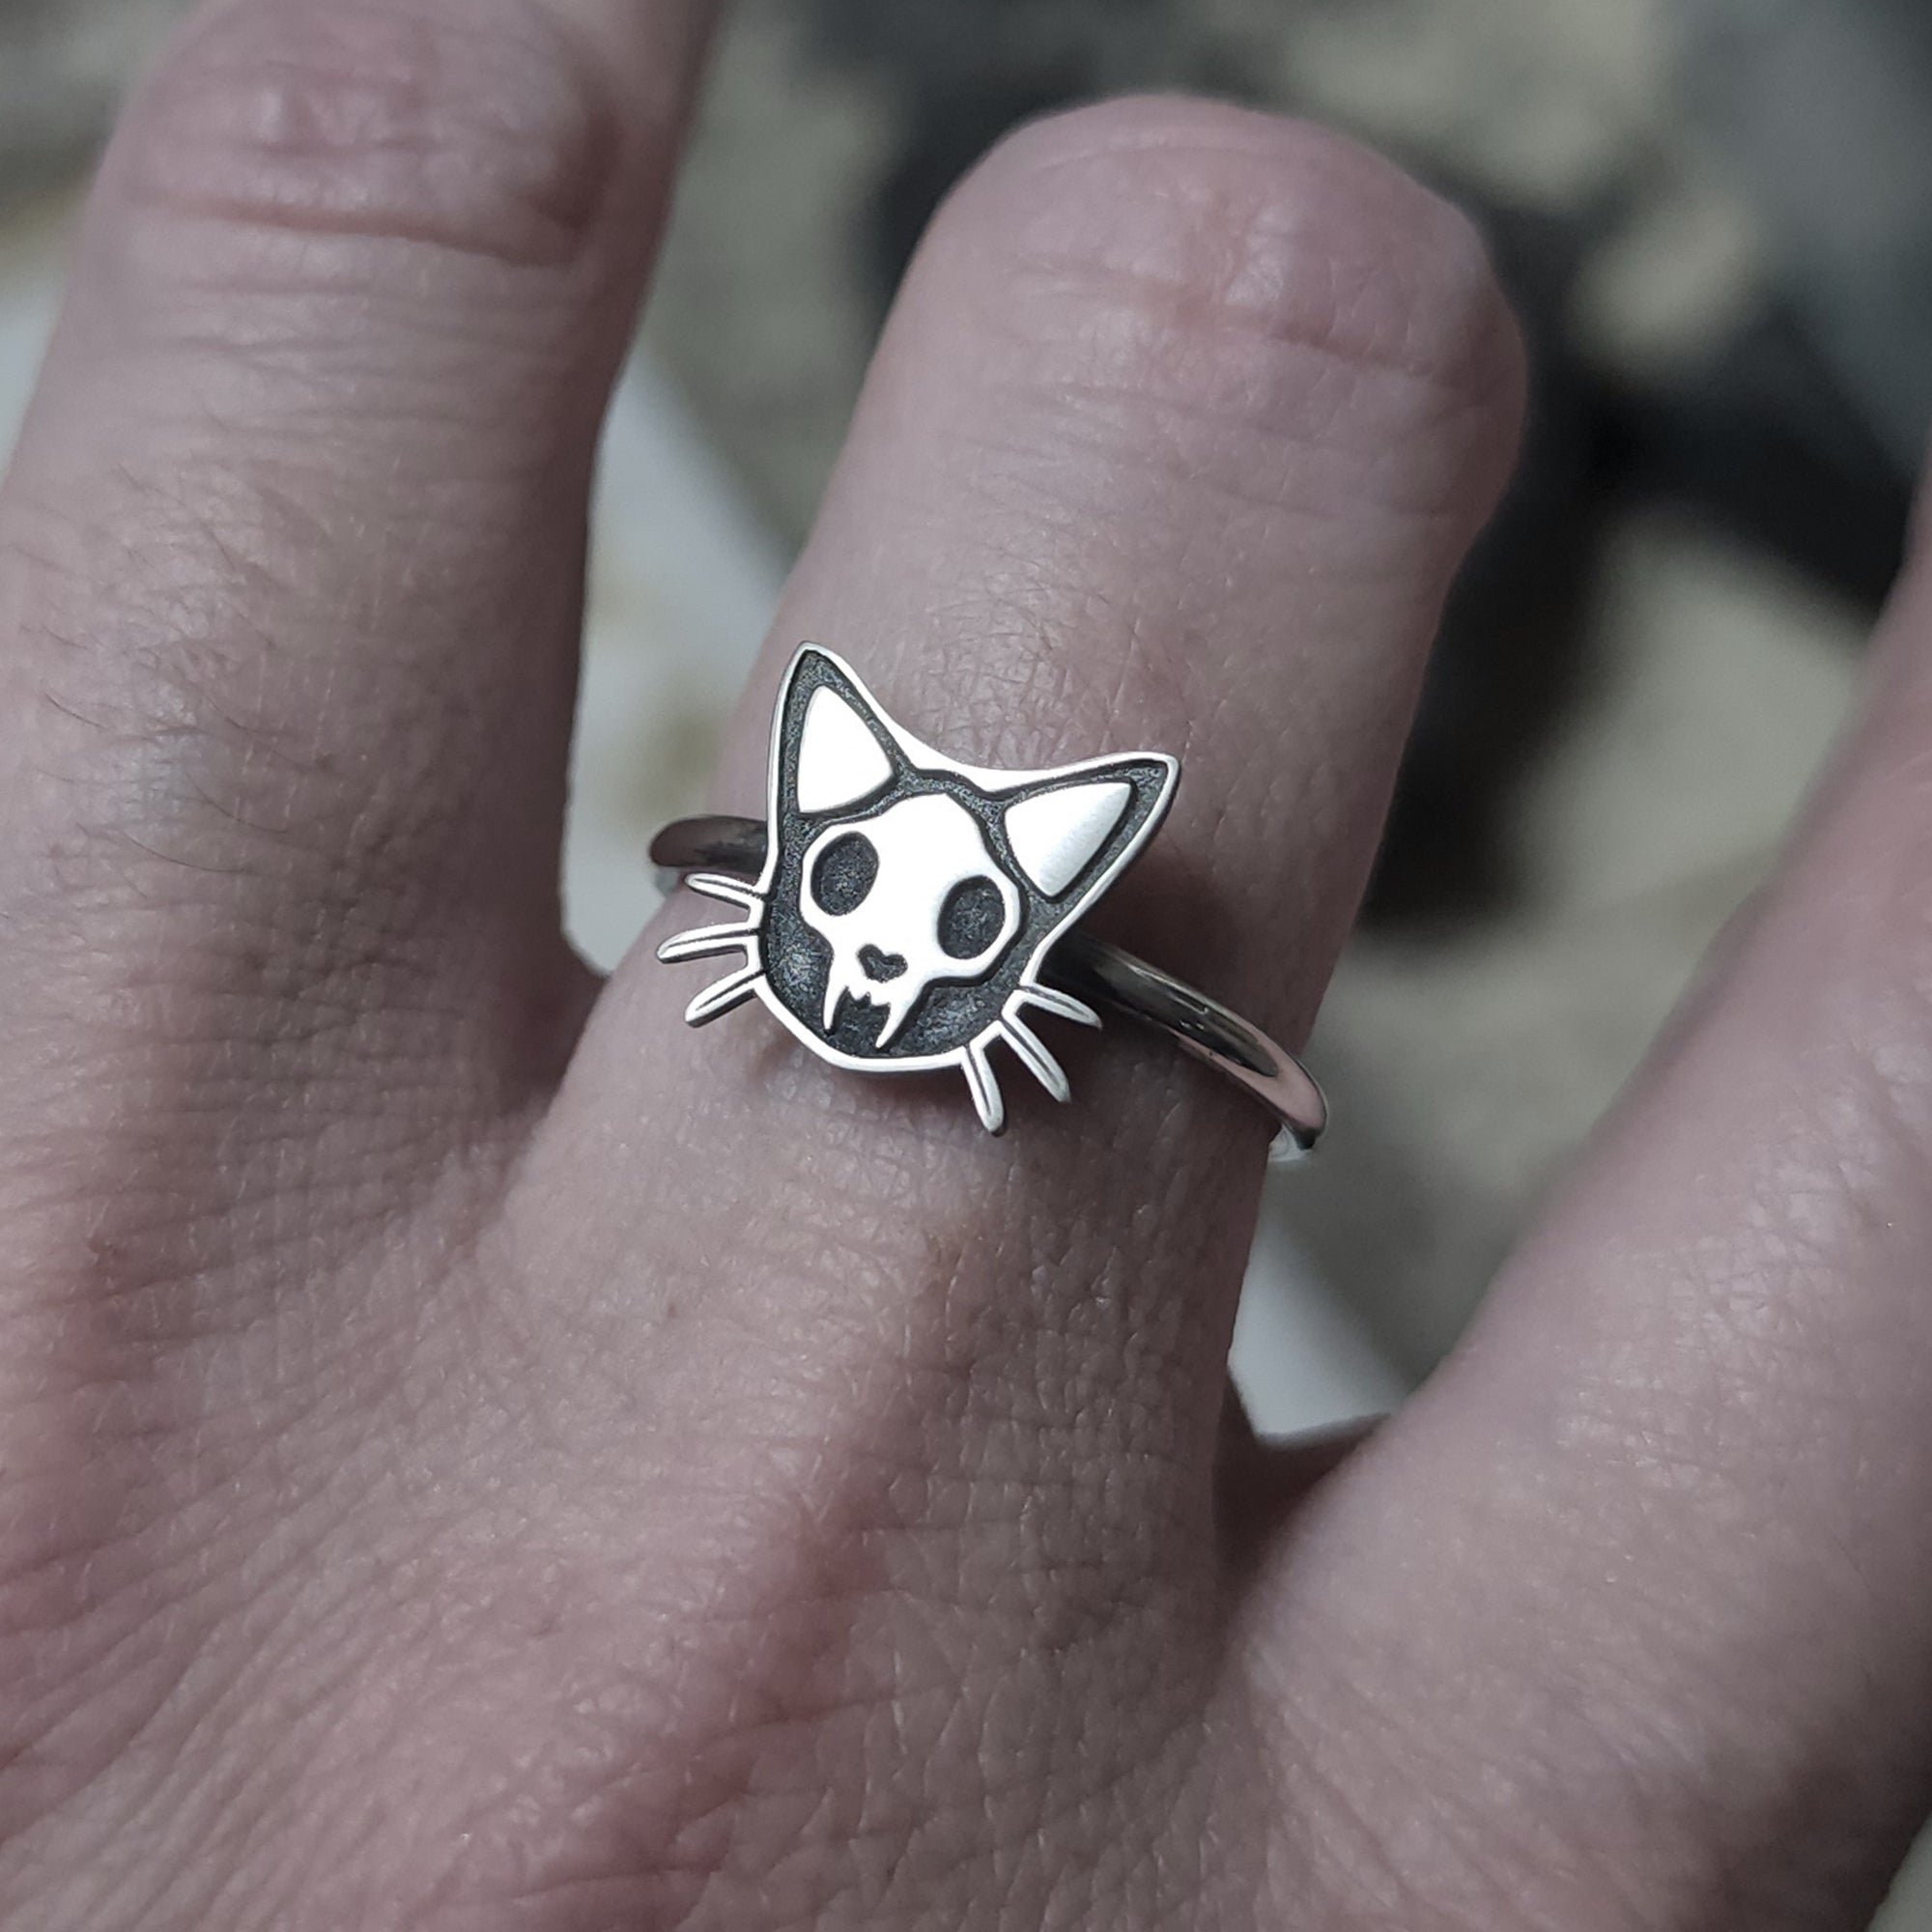 Skull Cat Ring - Metal Lotus